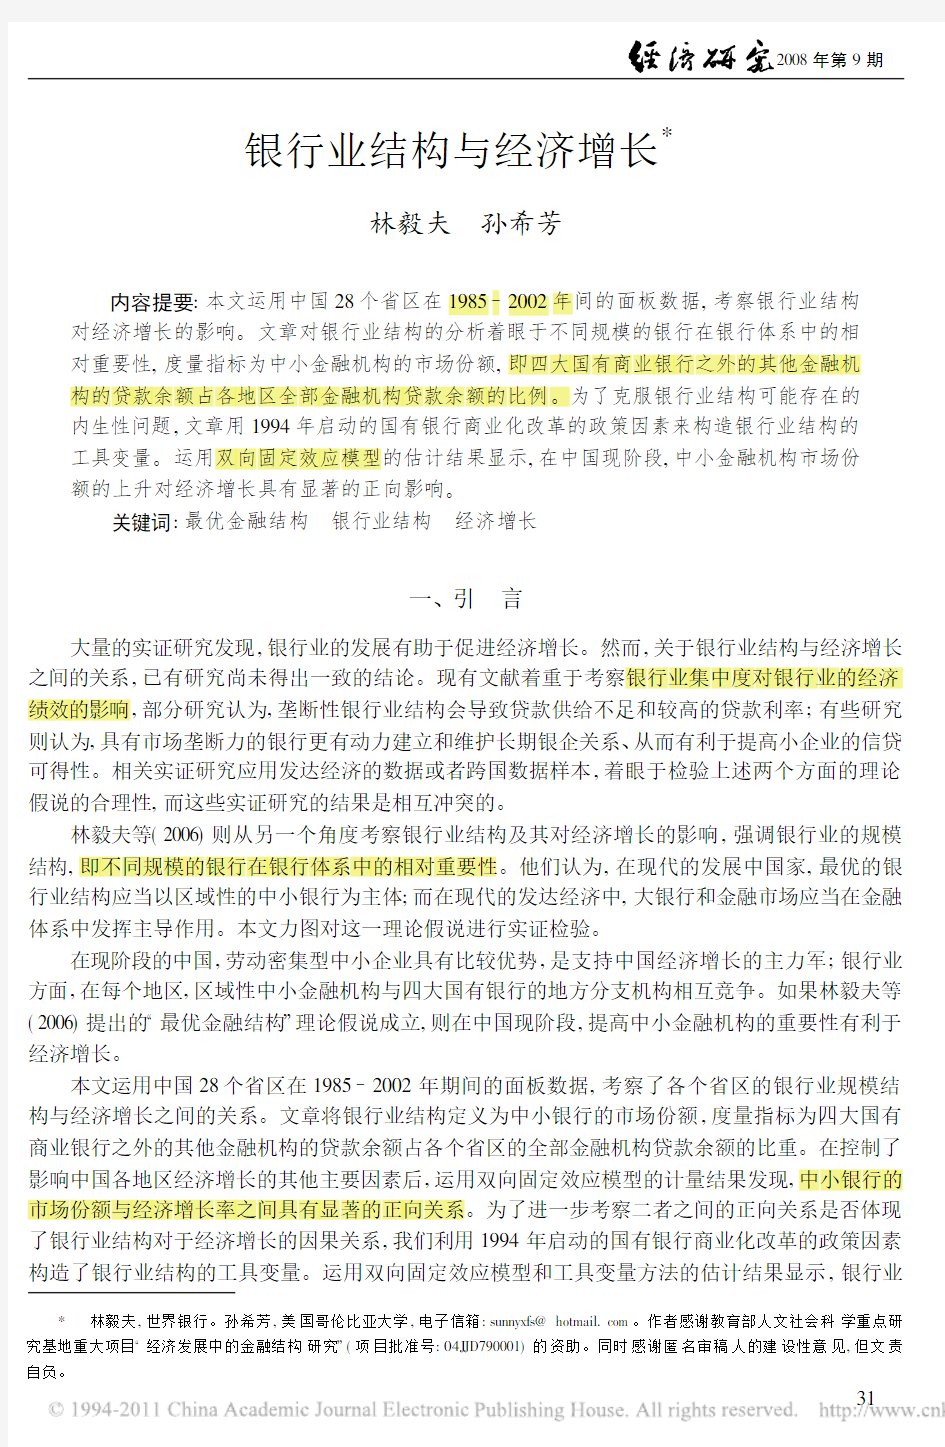 银行业结构与经济增长【林毅夫、孙希芳,经济研究(2008)】